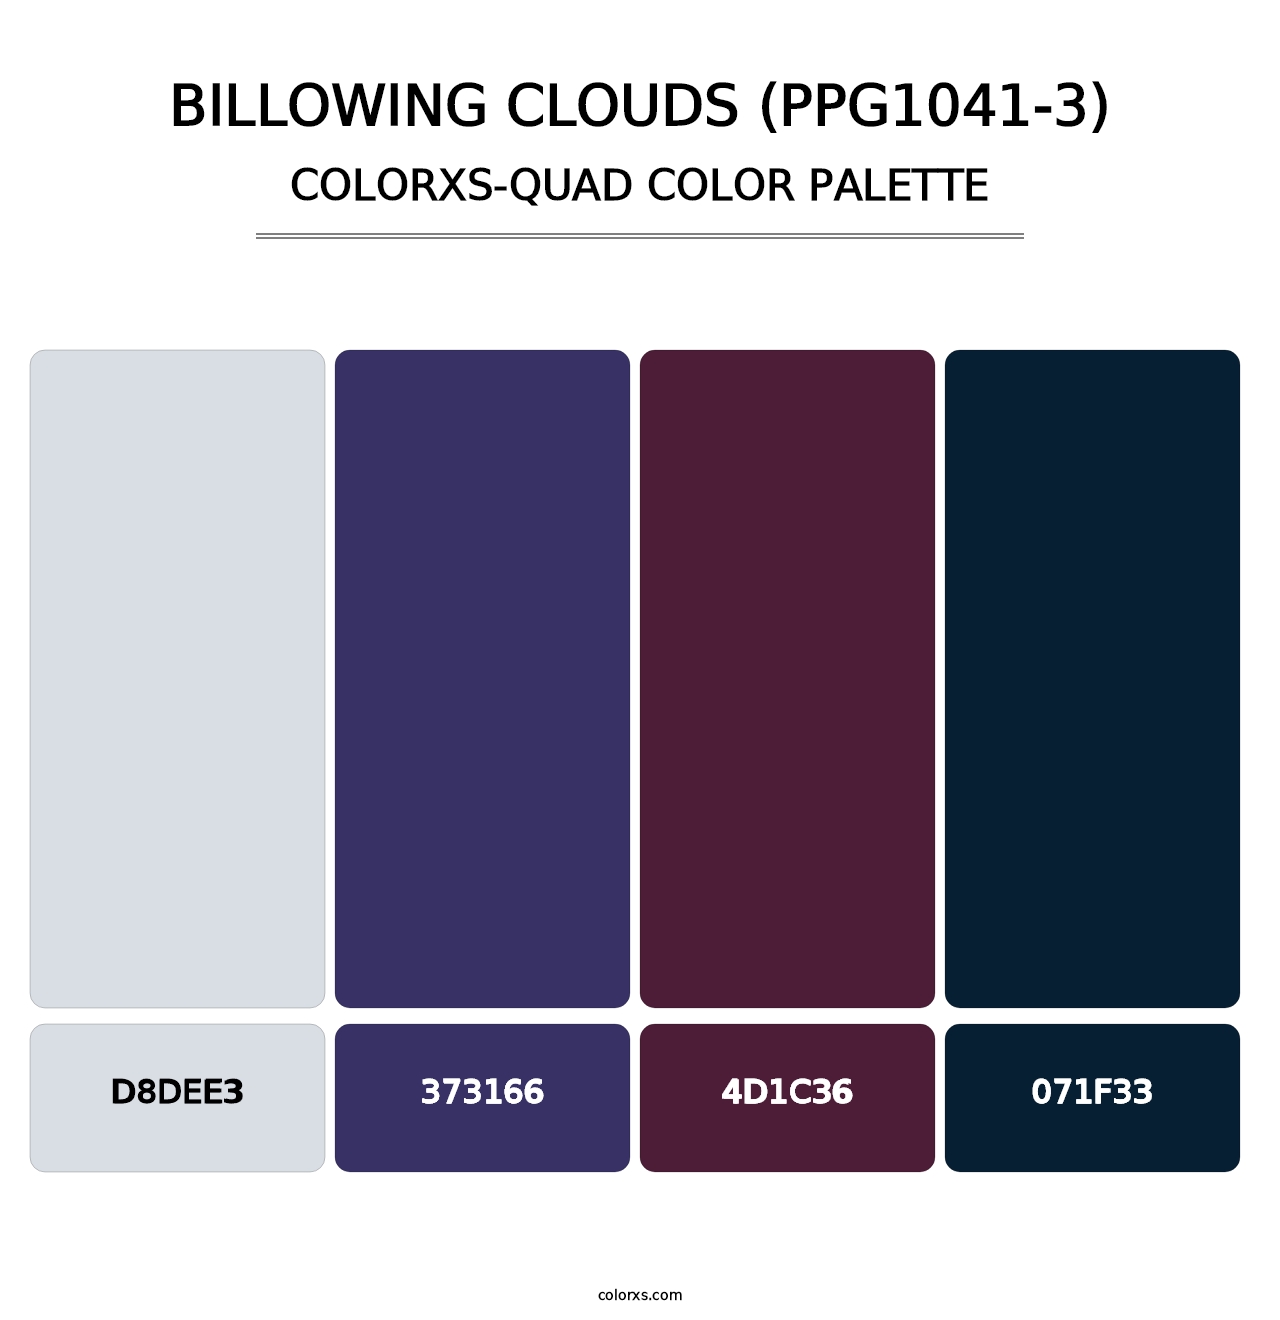 Billowing Clouds (PPG1041-3) - Colorxs Quad Palette